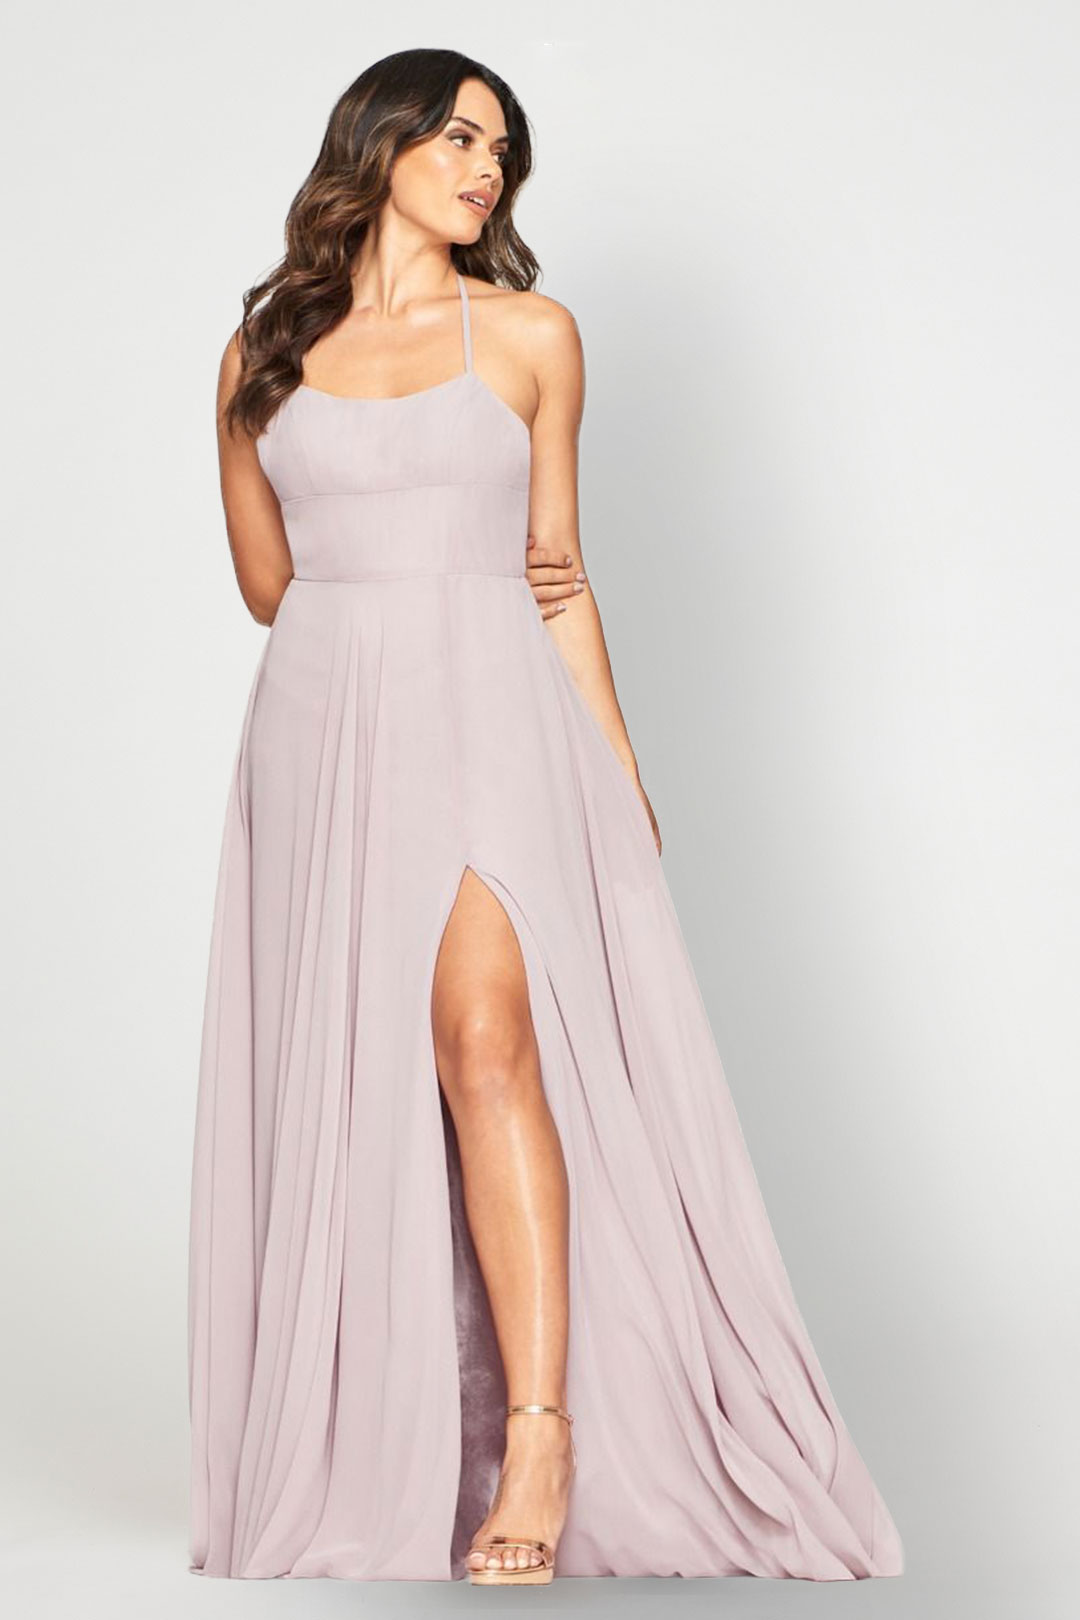 Mauve Chiffon Dress - Faviana Dress Rental